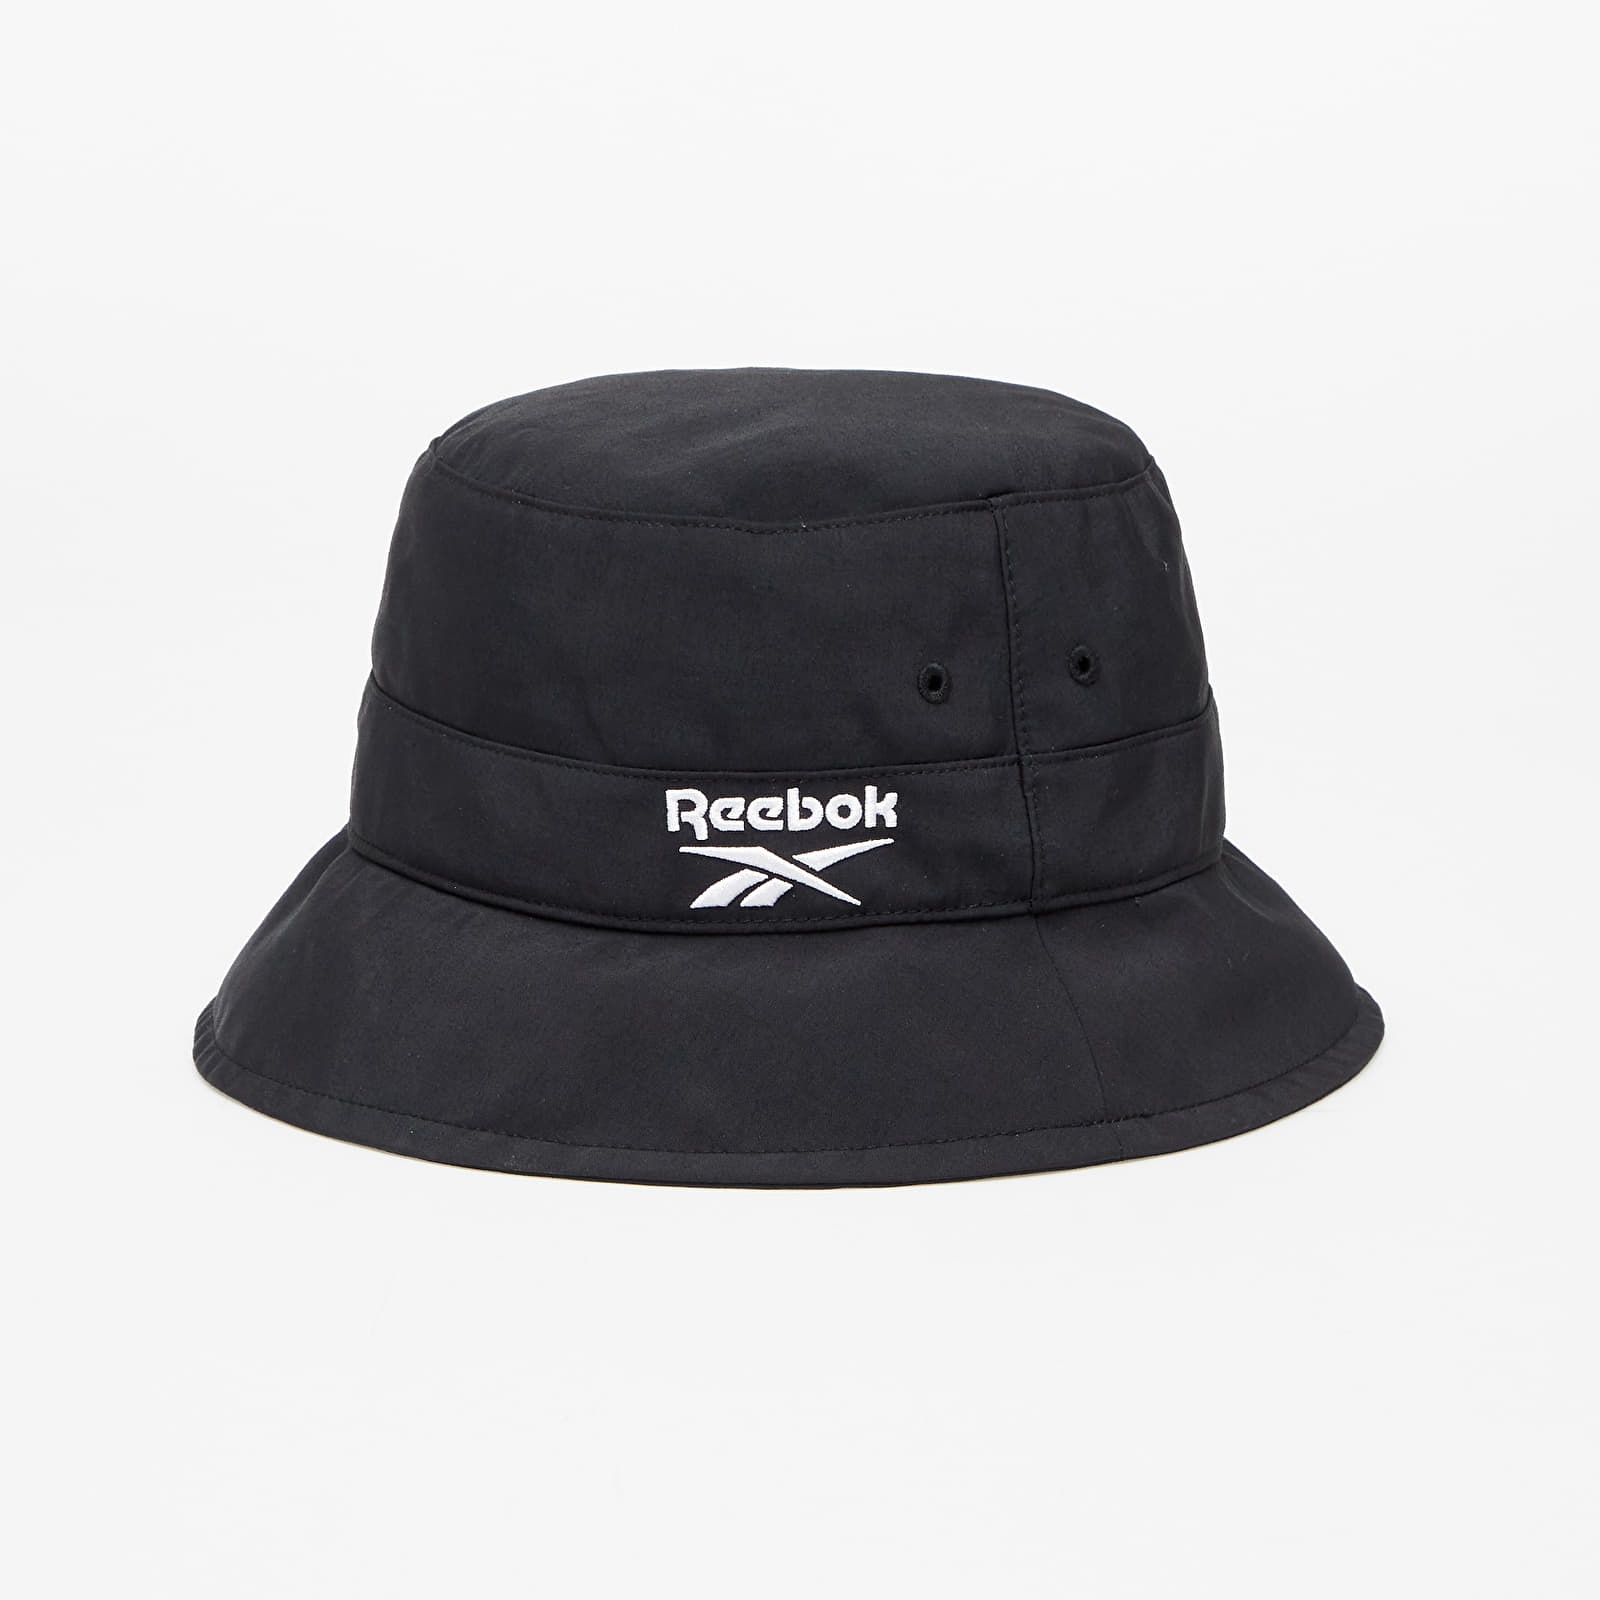 Kapelusze Reebok Classics Fo Bucket Hat Black/ Black